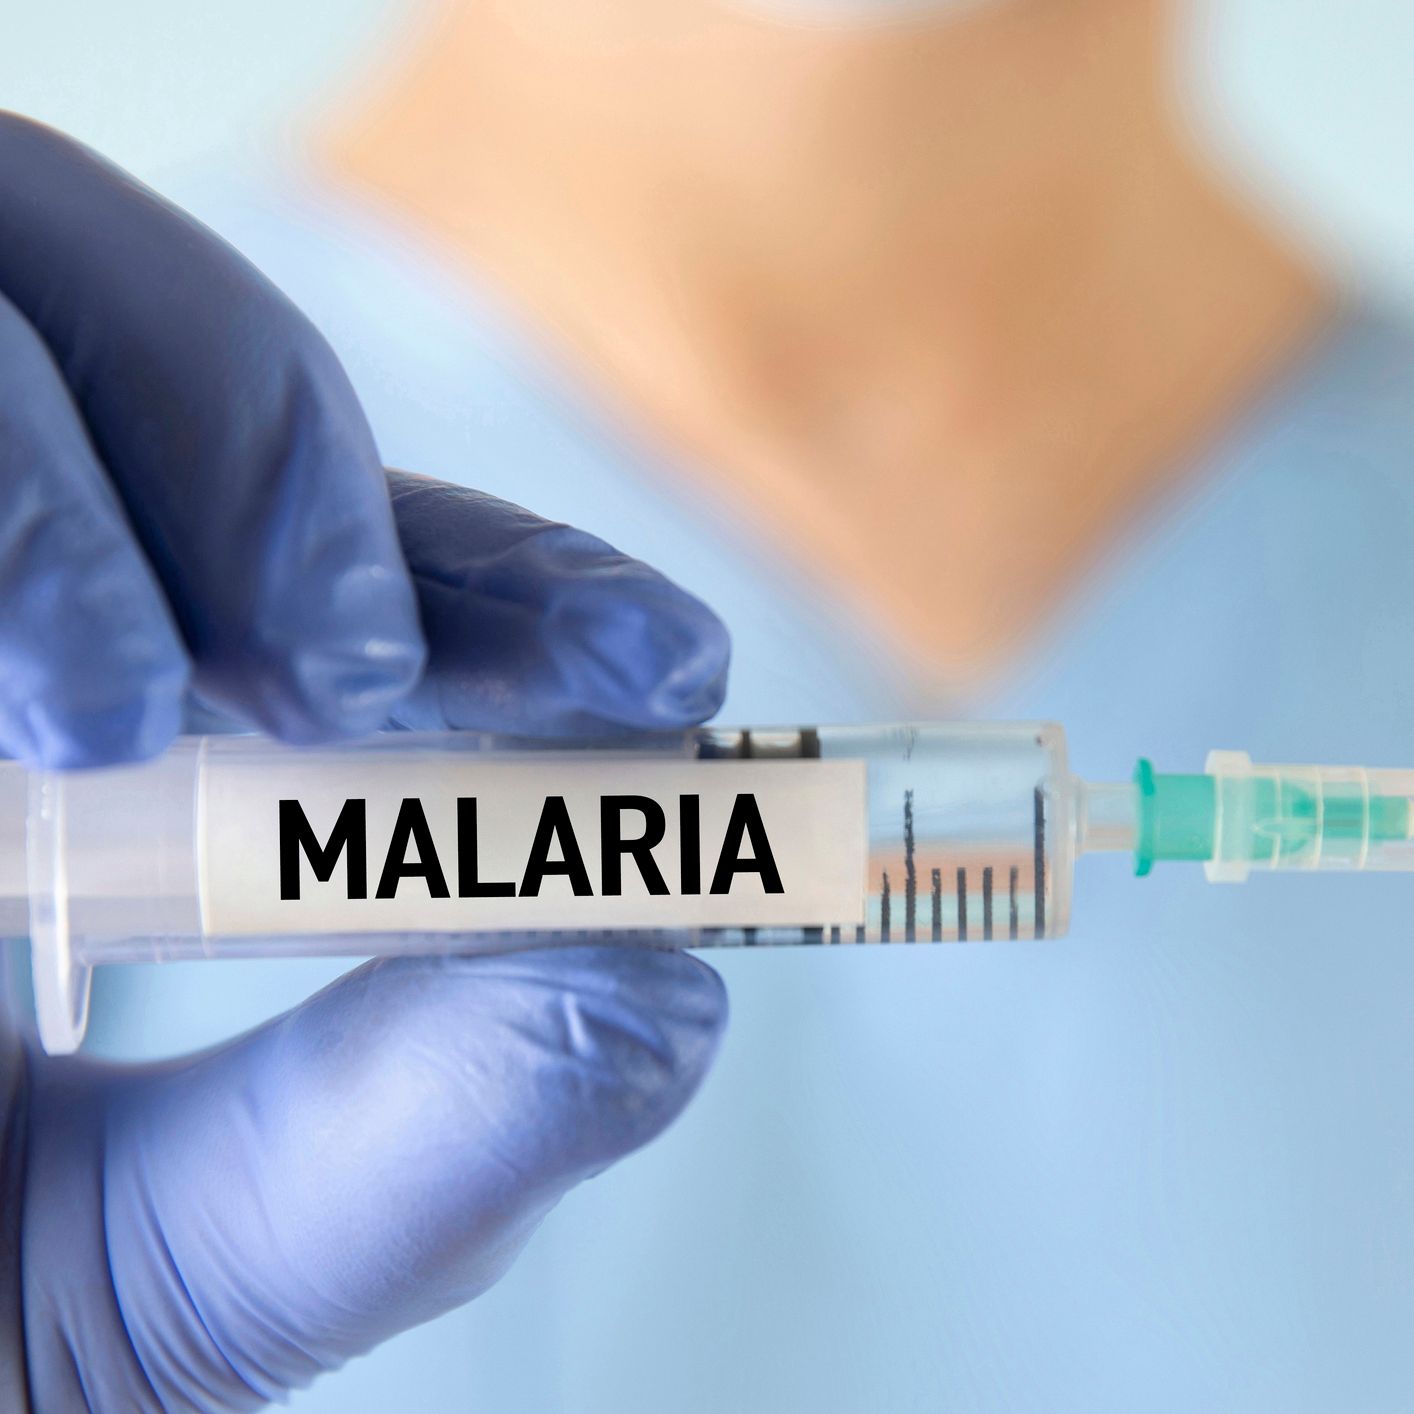 Entre probetas - La malaria: esa desconocida... ¡o casi! - 09/04/24